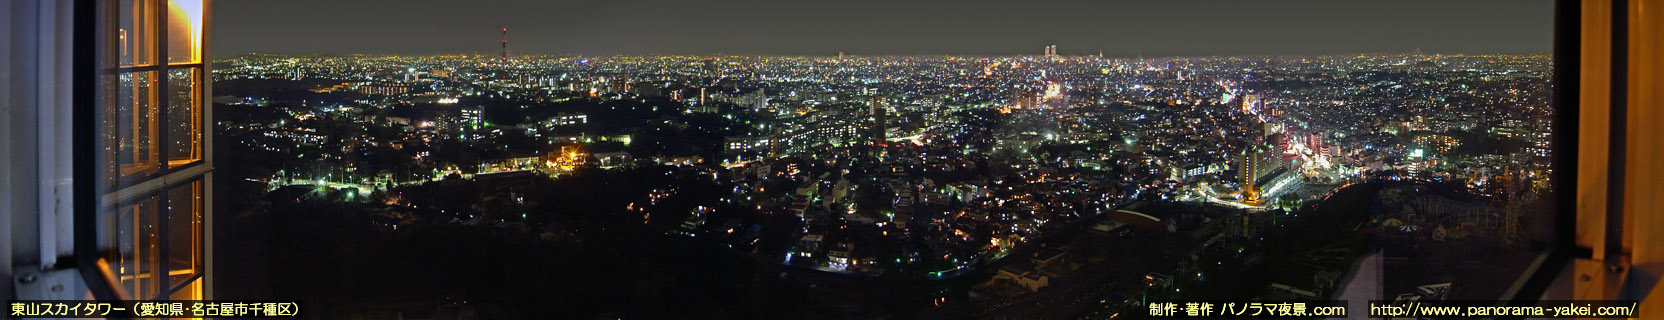 東山スカイタワーからのパノラマ夜景写真